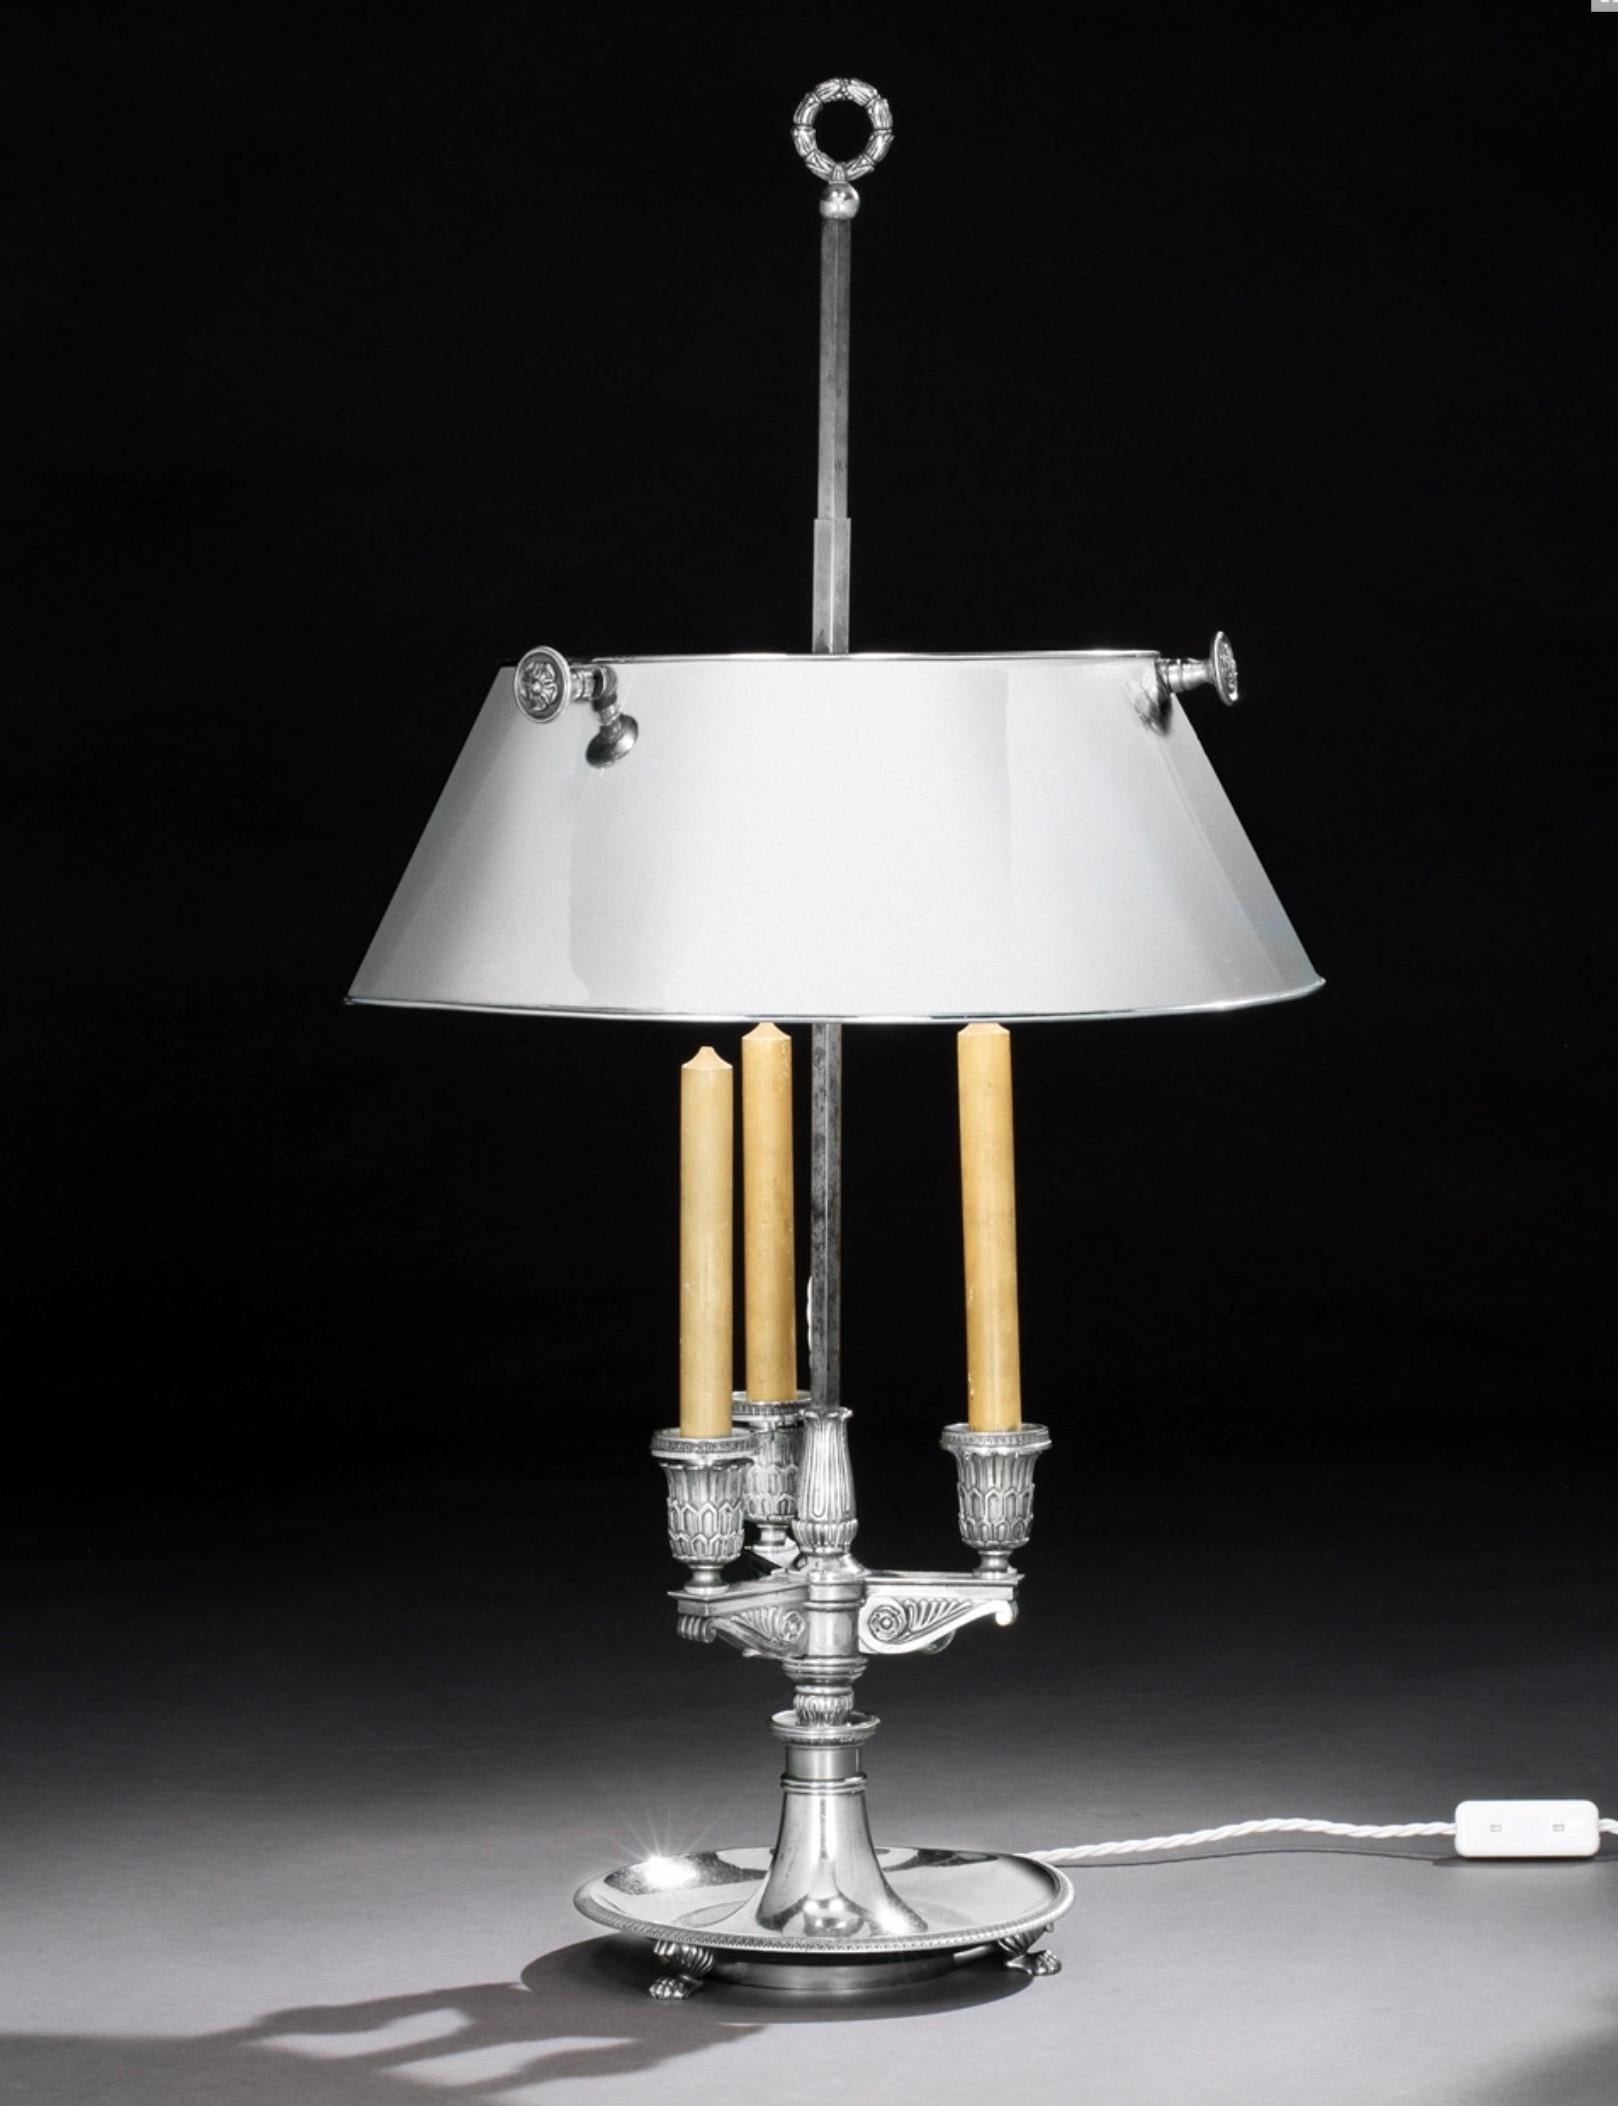 Lampe à bouilotte française en acier poli de la fin du XIXe siècle. Câblée pour l'électricité - les ampoules sont cachées dans l'abat-jour.
Fausses bougies et objets métalliques de qualité. La hauteur de l'abat-jour est réglable. De style